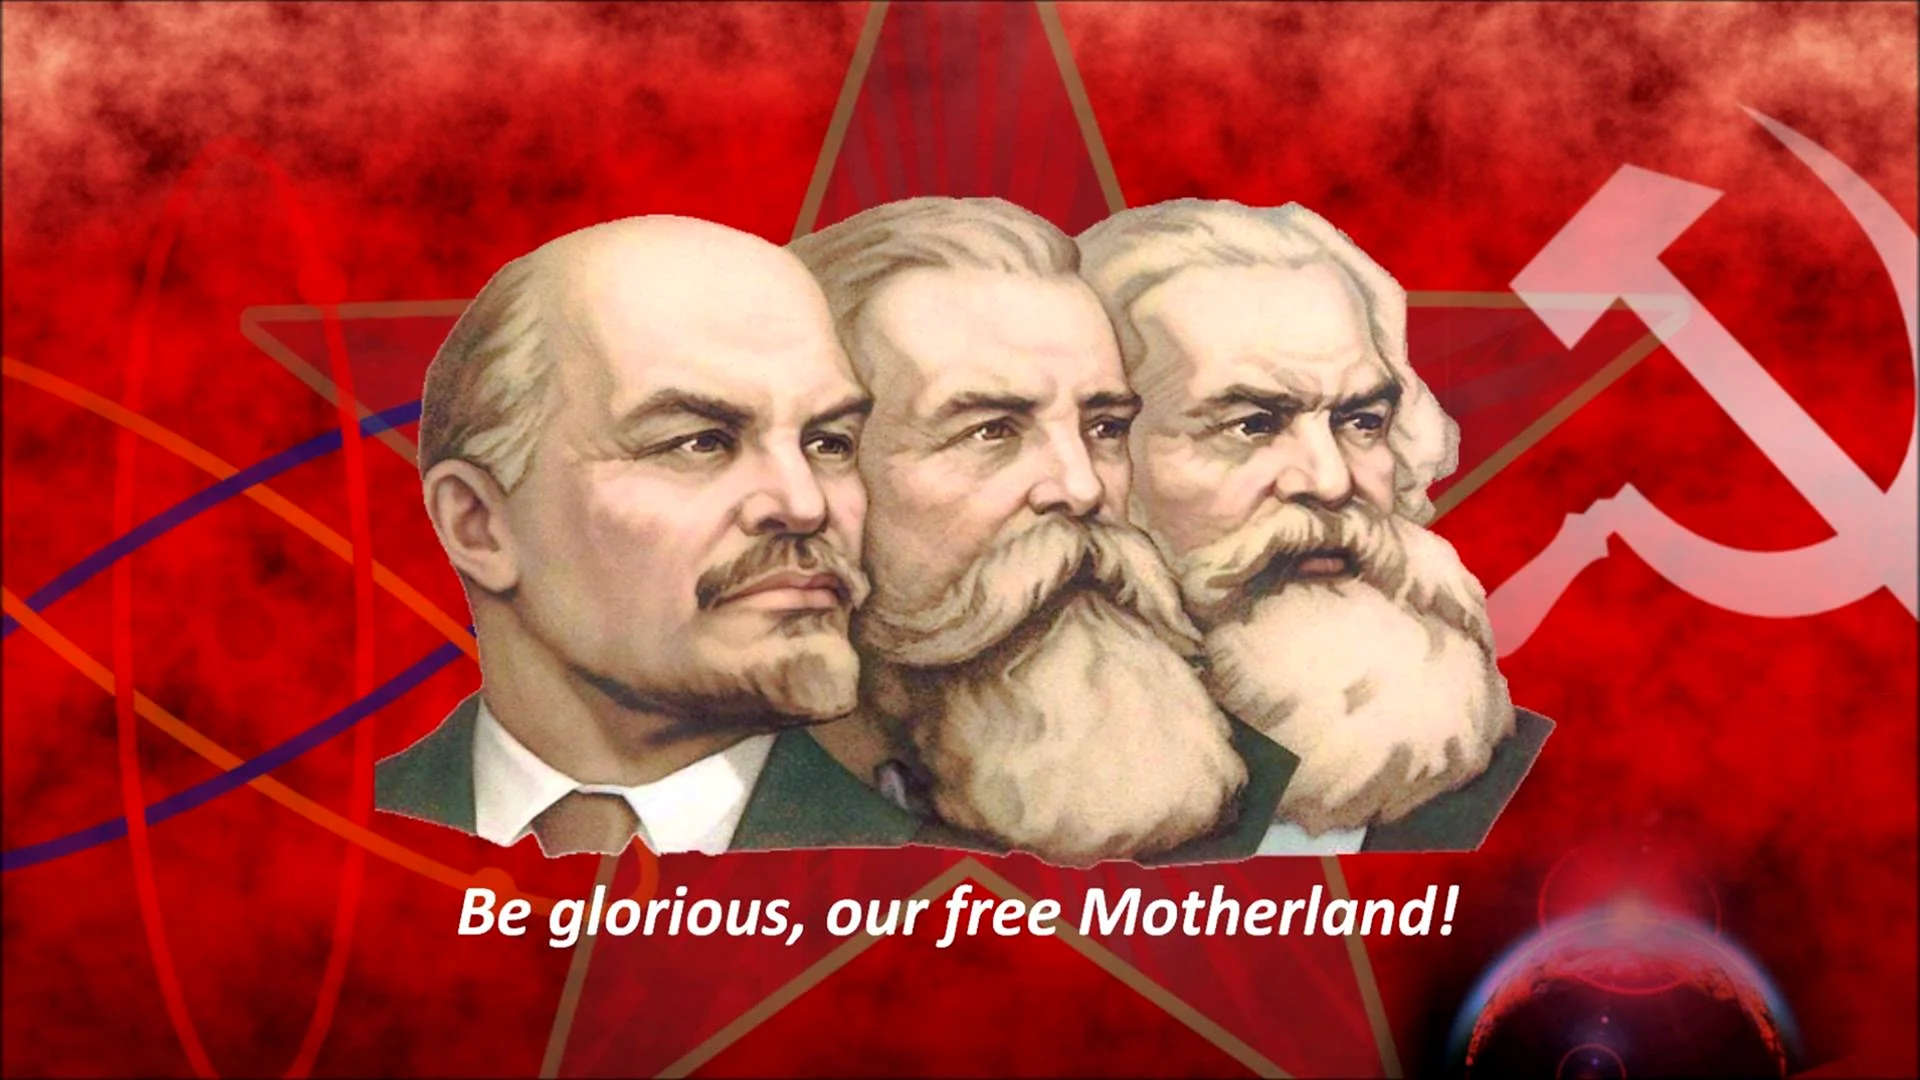 Маркс Энгельс Ленин Сталин плакат